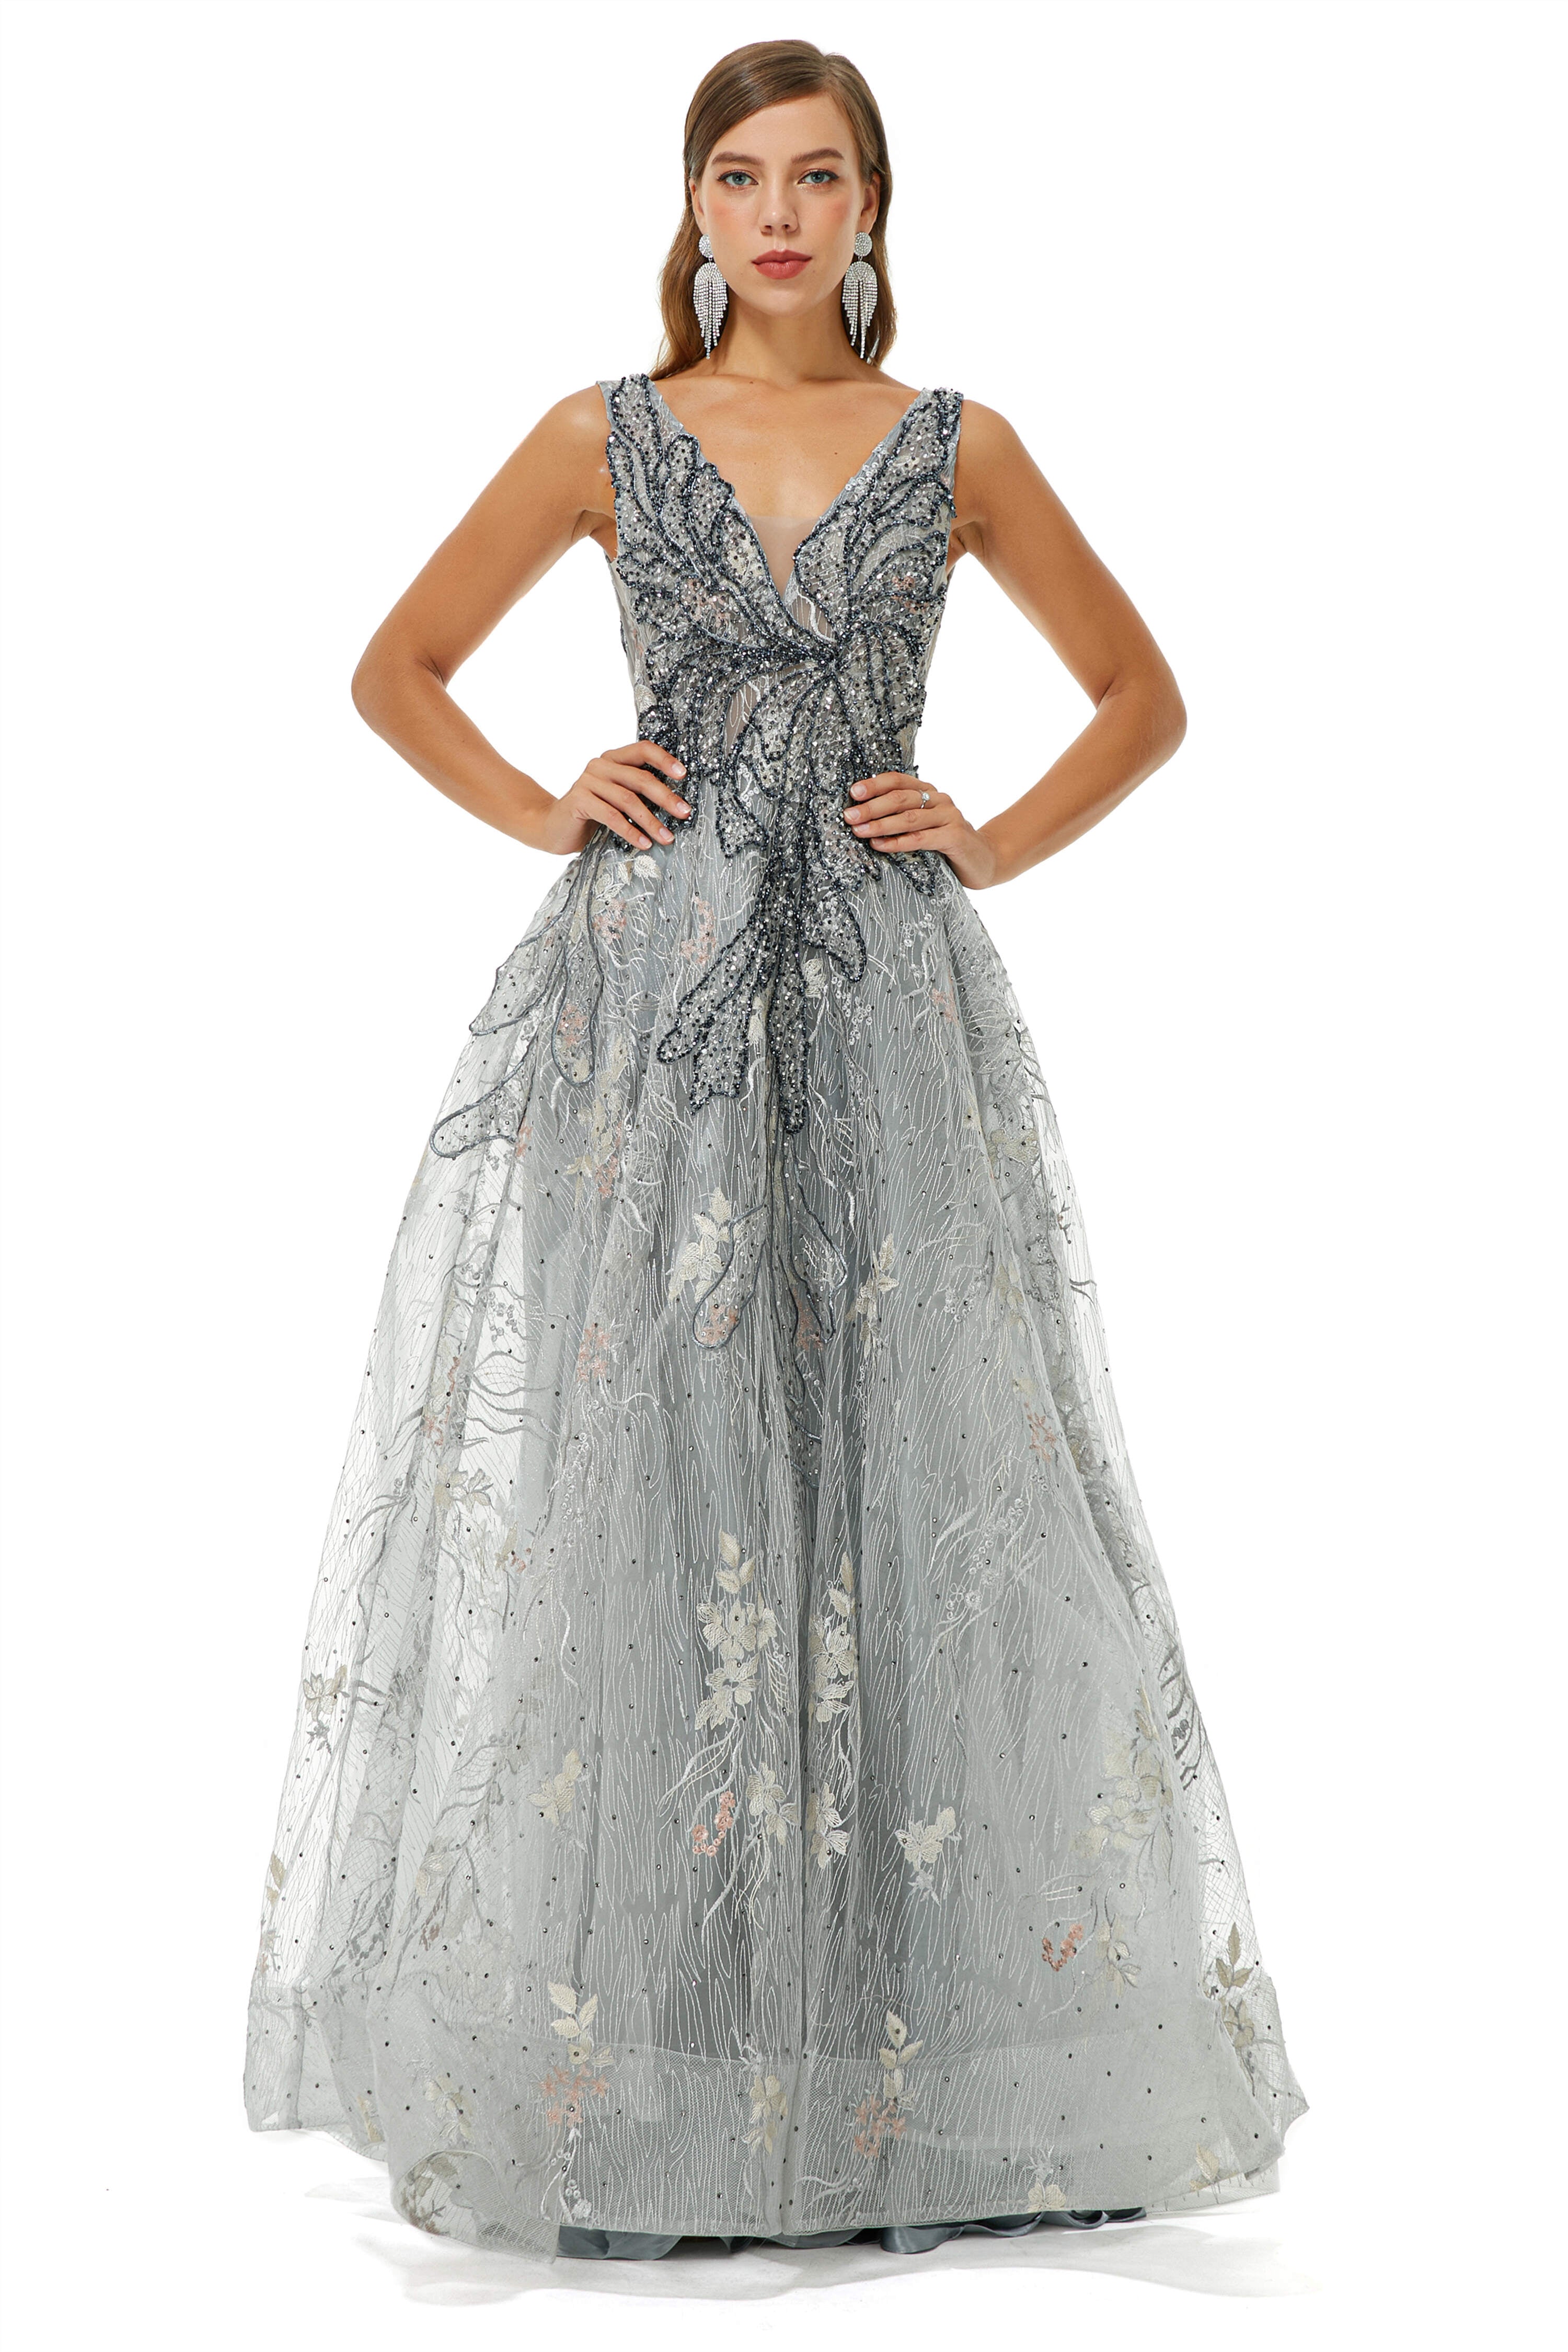 On Shoulder Dress, A-line V-neck Strap Lace Sequined Beaded Open Back Floor-length Prom Dresses